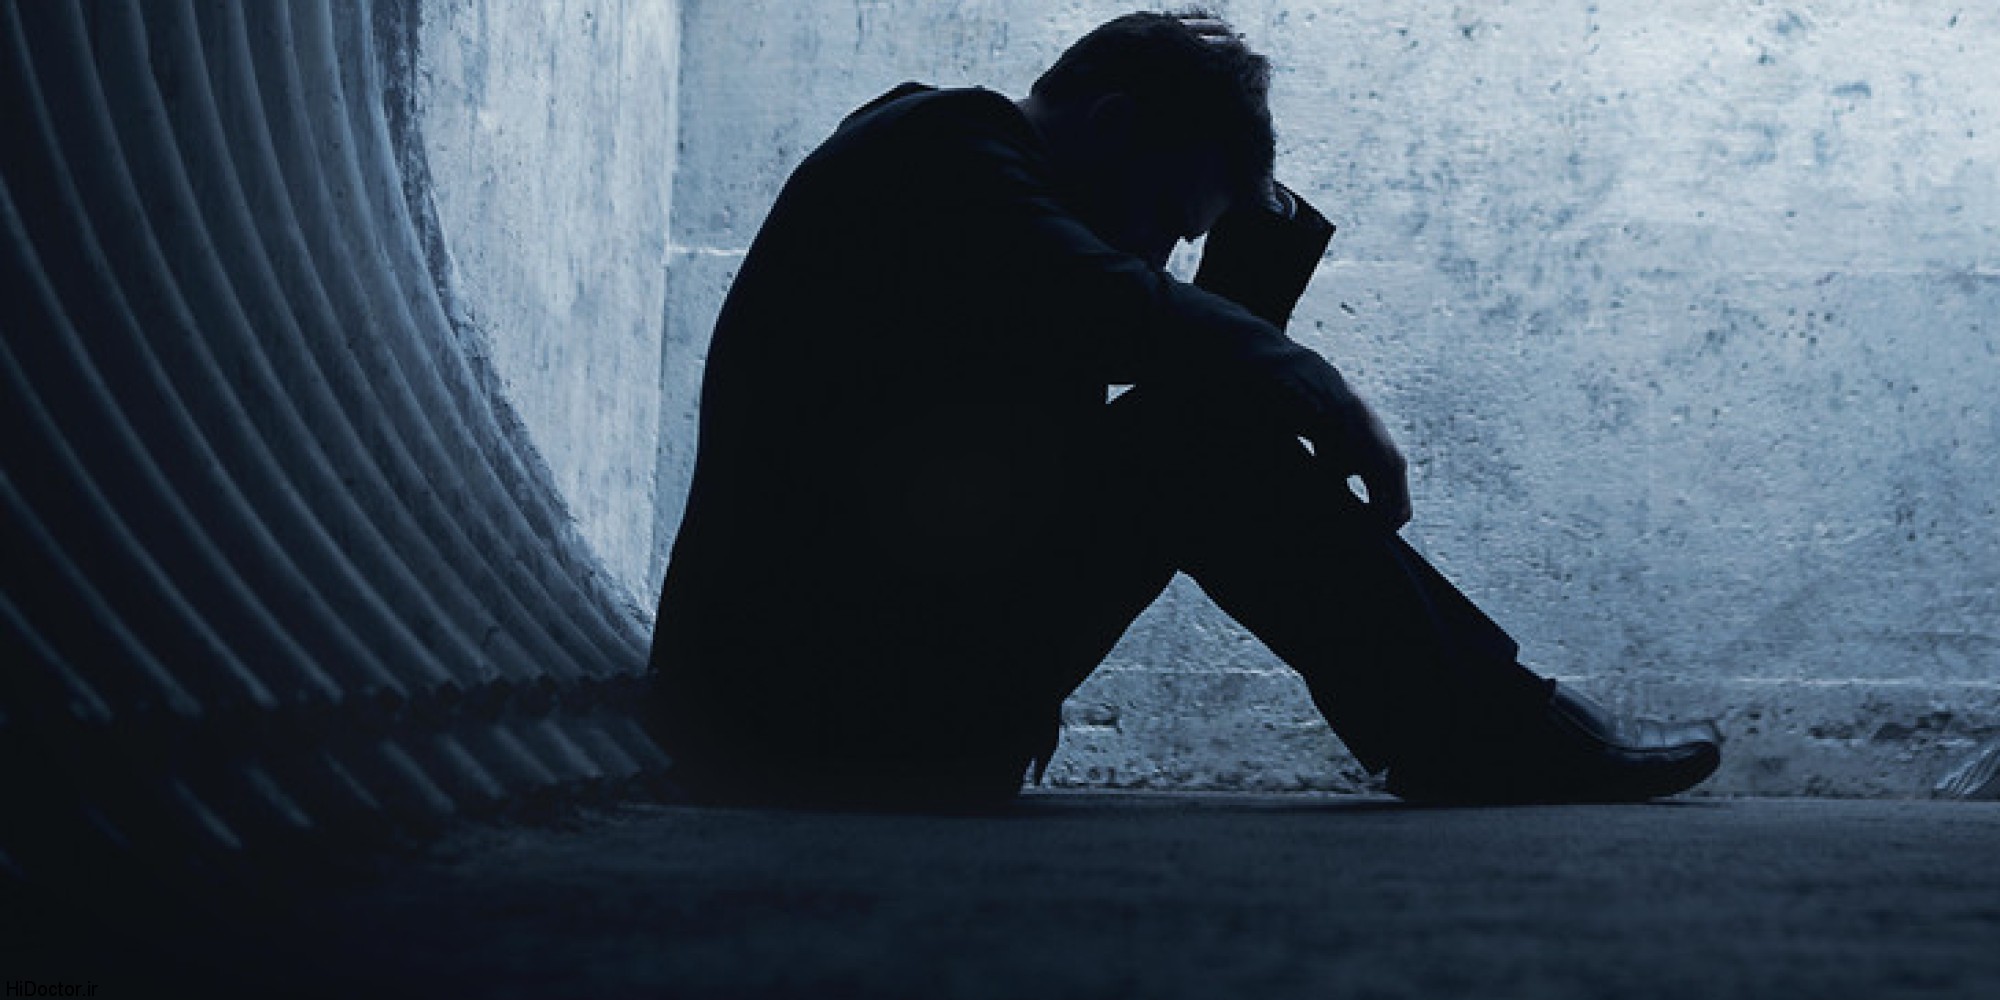 افسردگی و اضطراب ناشی از کرونا را چگونه کاهش دهیم؟